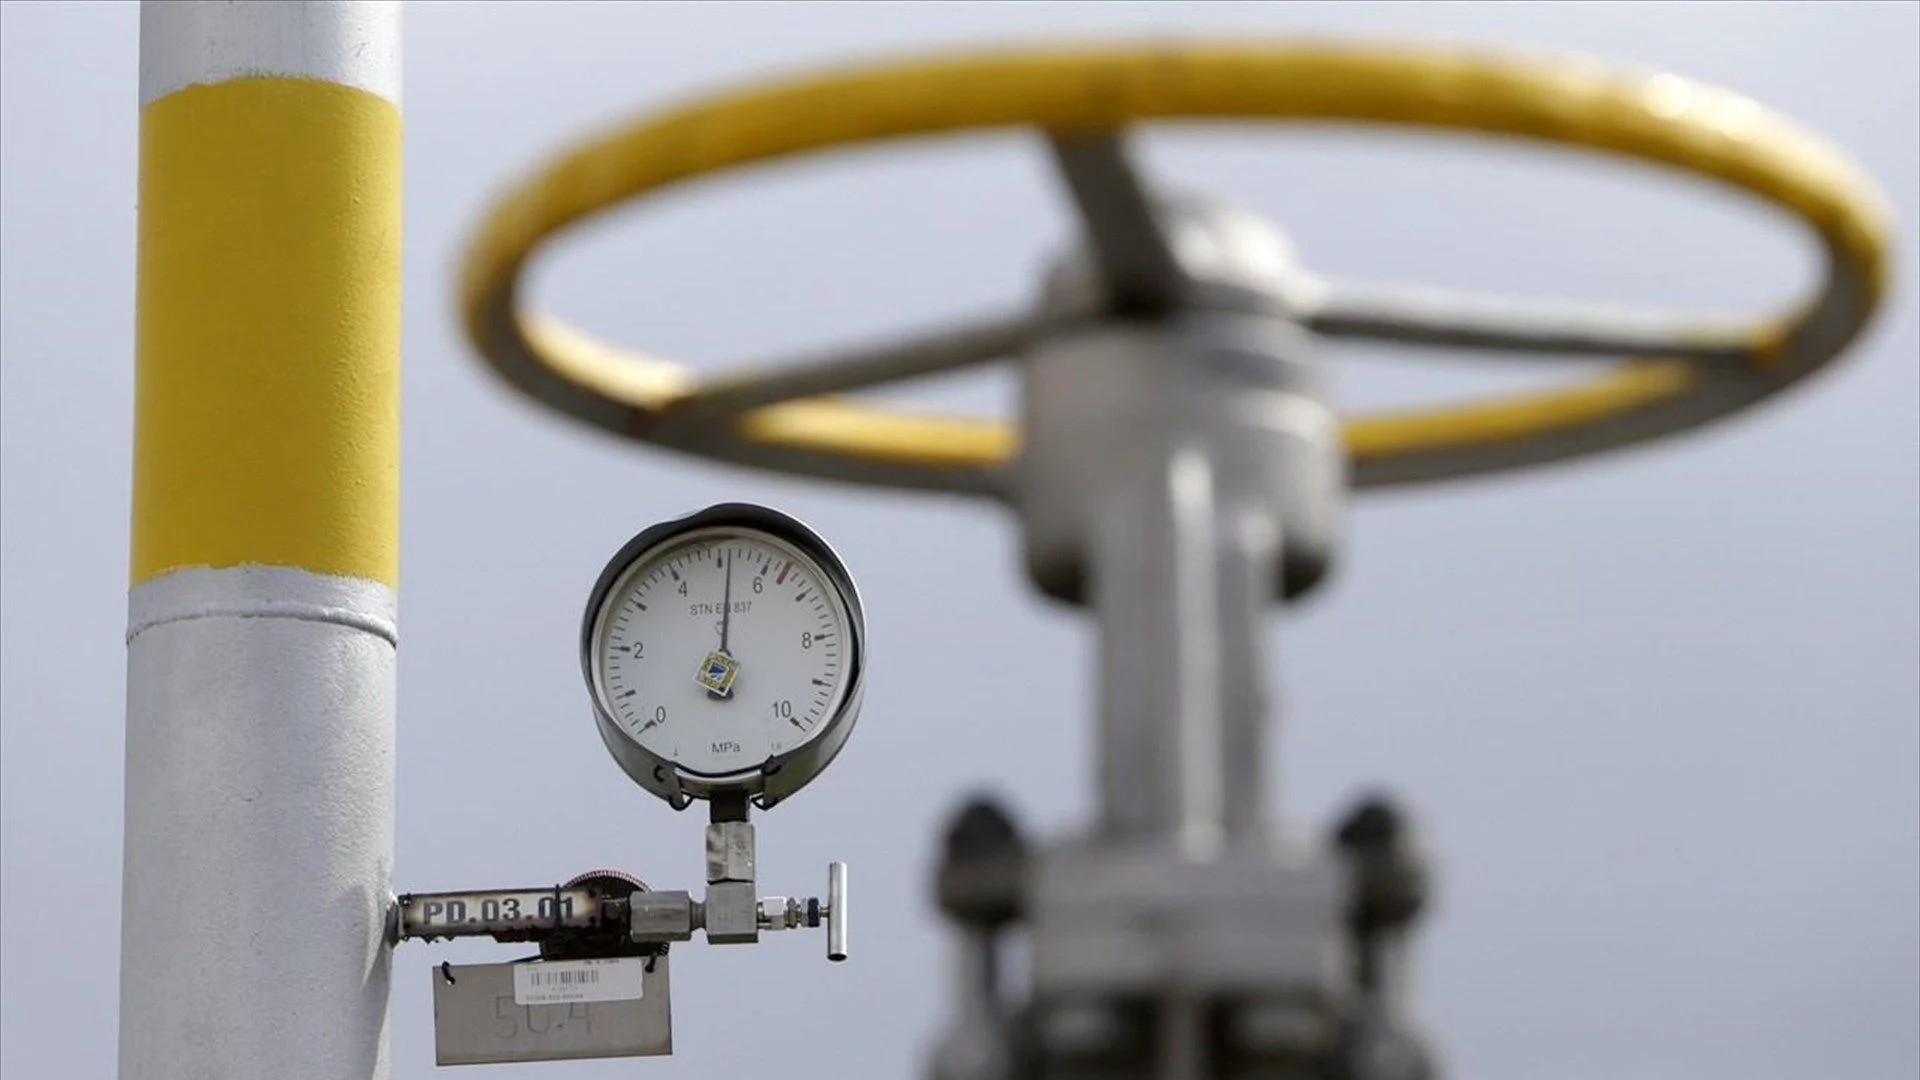 Ελλάδα: Νέα δεδομένα στην πορεία των ερευνών για φυσικό αέριο